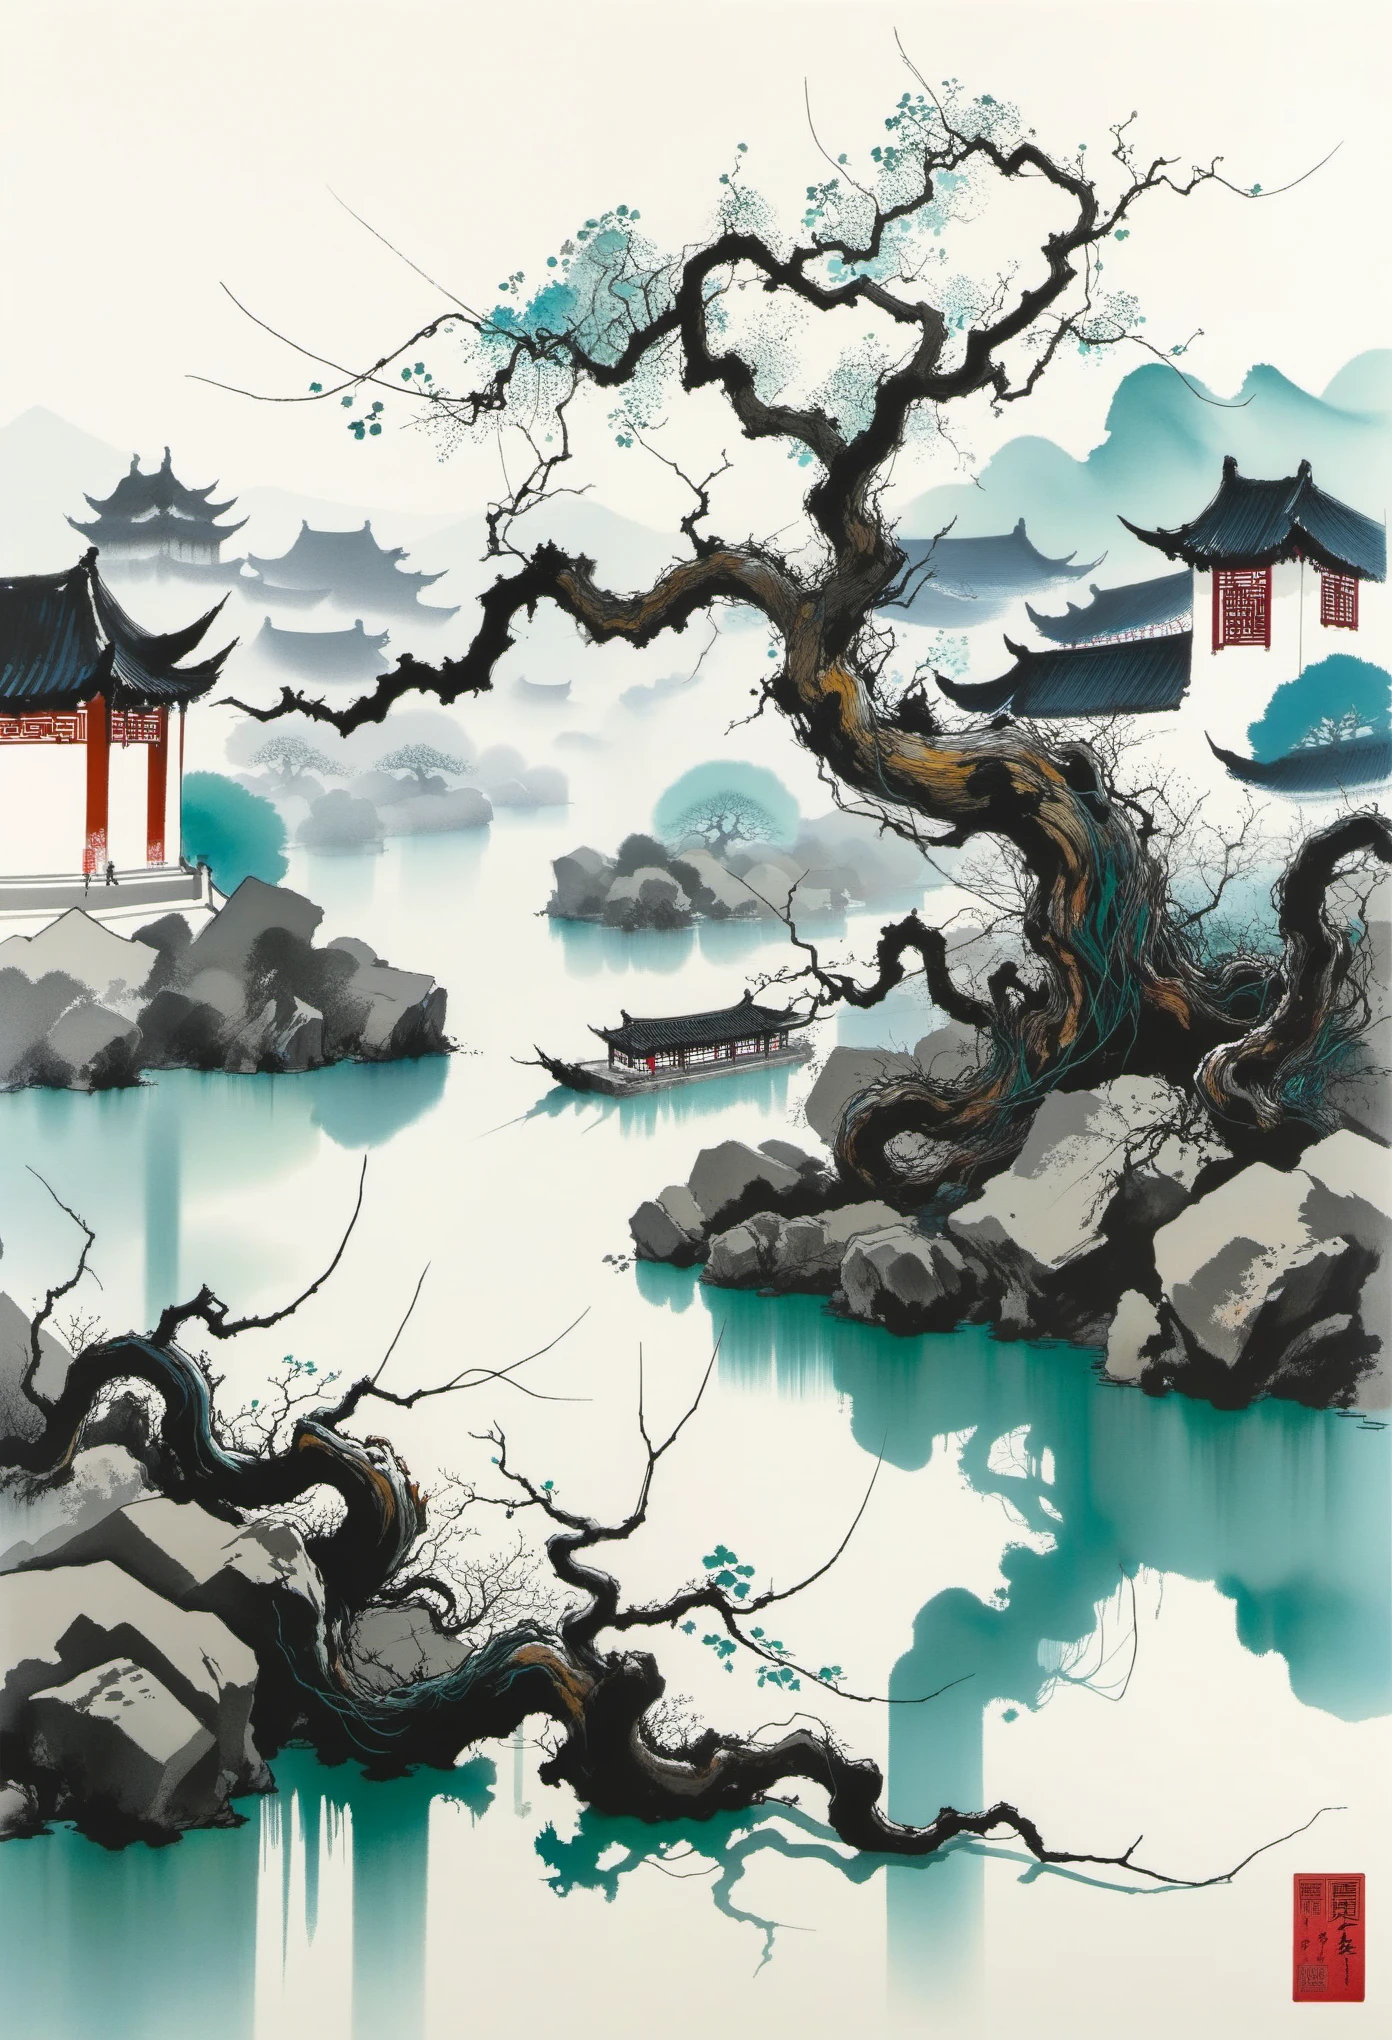 죽은 덩굴，오래 된 나무，샤오차오，흐르는 물，기하학적 추상 잉크，Jiangnan 조경 건축 단지를 설명하십시오，Wu Guanzhong의 스타일은 중국의 전통 수묵 기법과 서양 회화 개념을 결합한 예술적 표현입니다.. 전통적인 주제를 현대적으로 해석한 것이 특징입니다., 색상과 선을 통해 독특한 시각적 효과를 만들어냅니다..